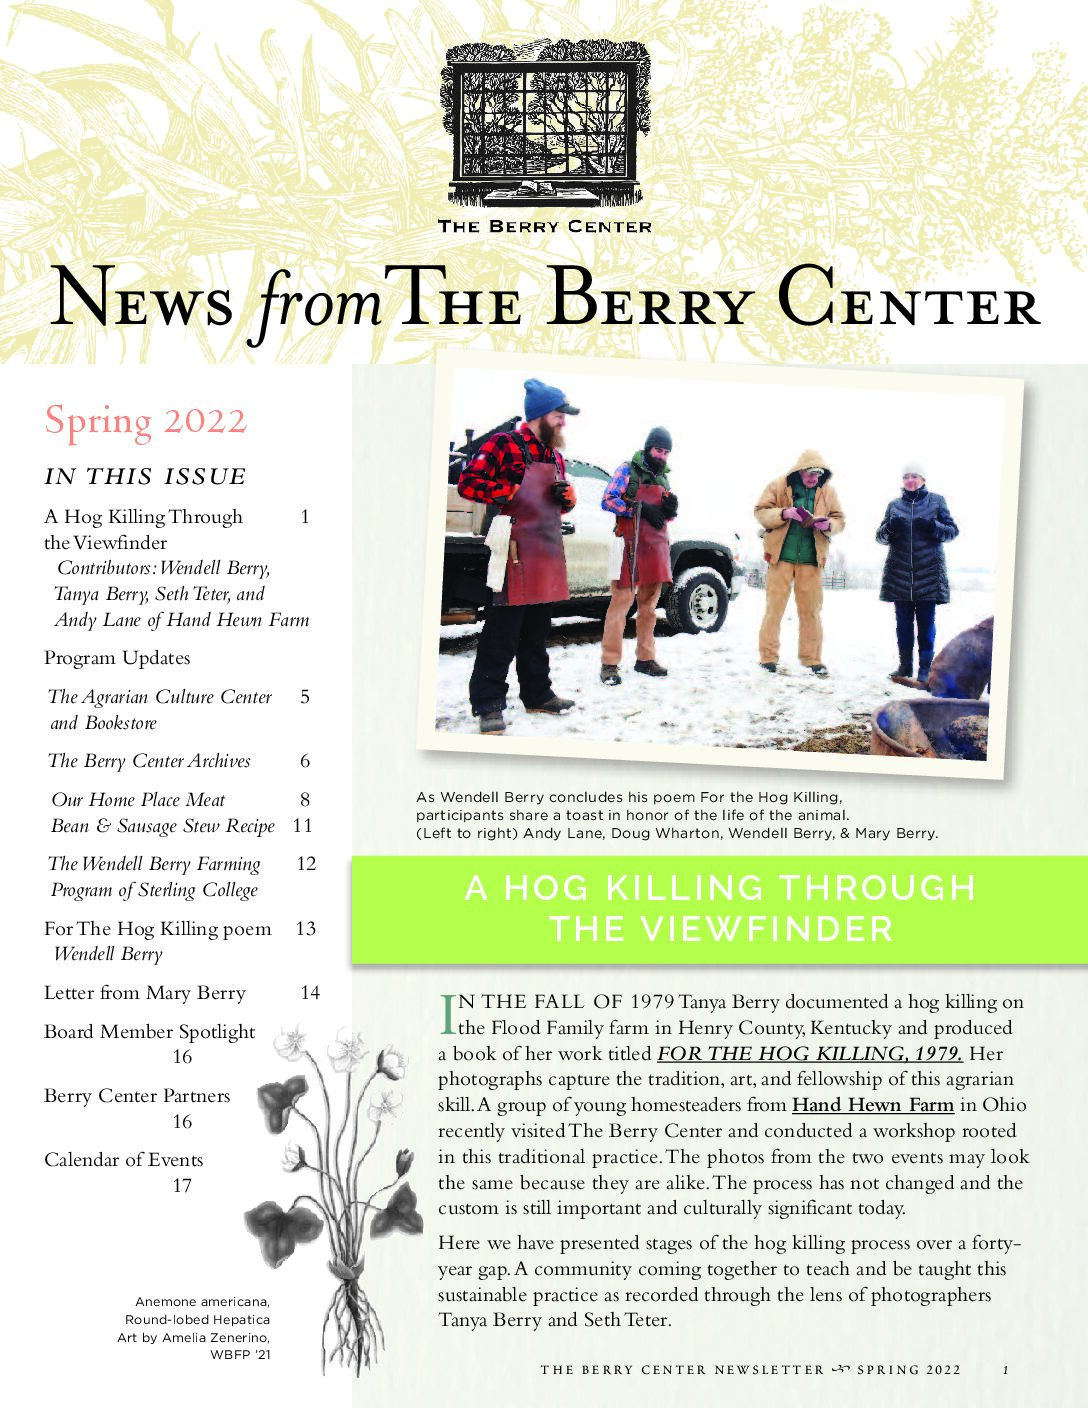 The Berry Center Newsletter – Spring 2022